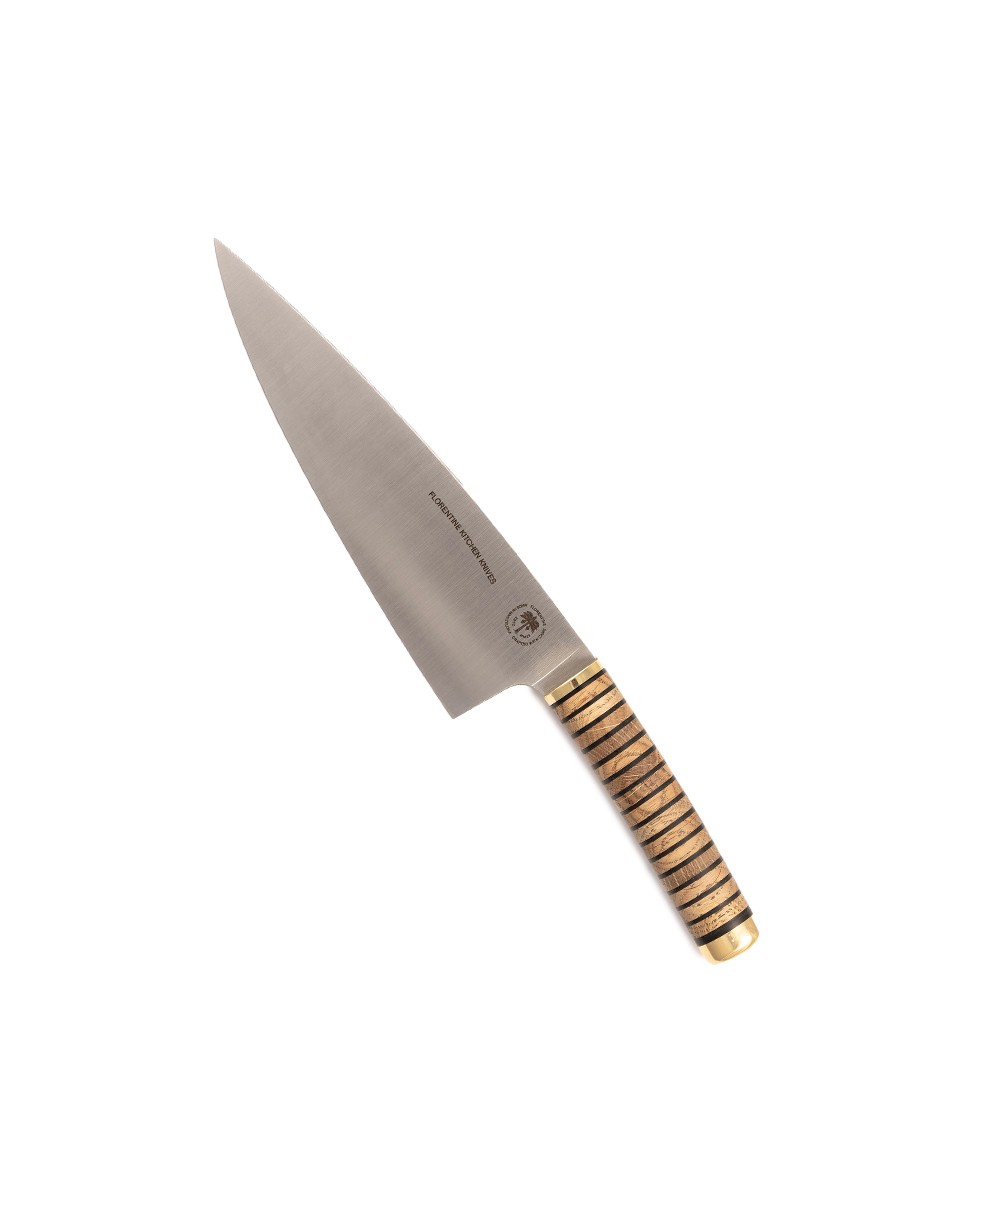 Produktbild des Florentine Chef Knife in wood von Florentine Kitchen Knives im RAUM concept store 